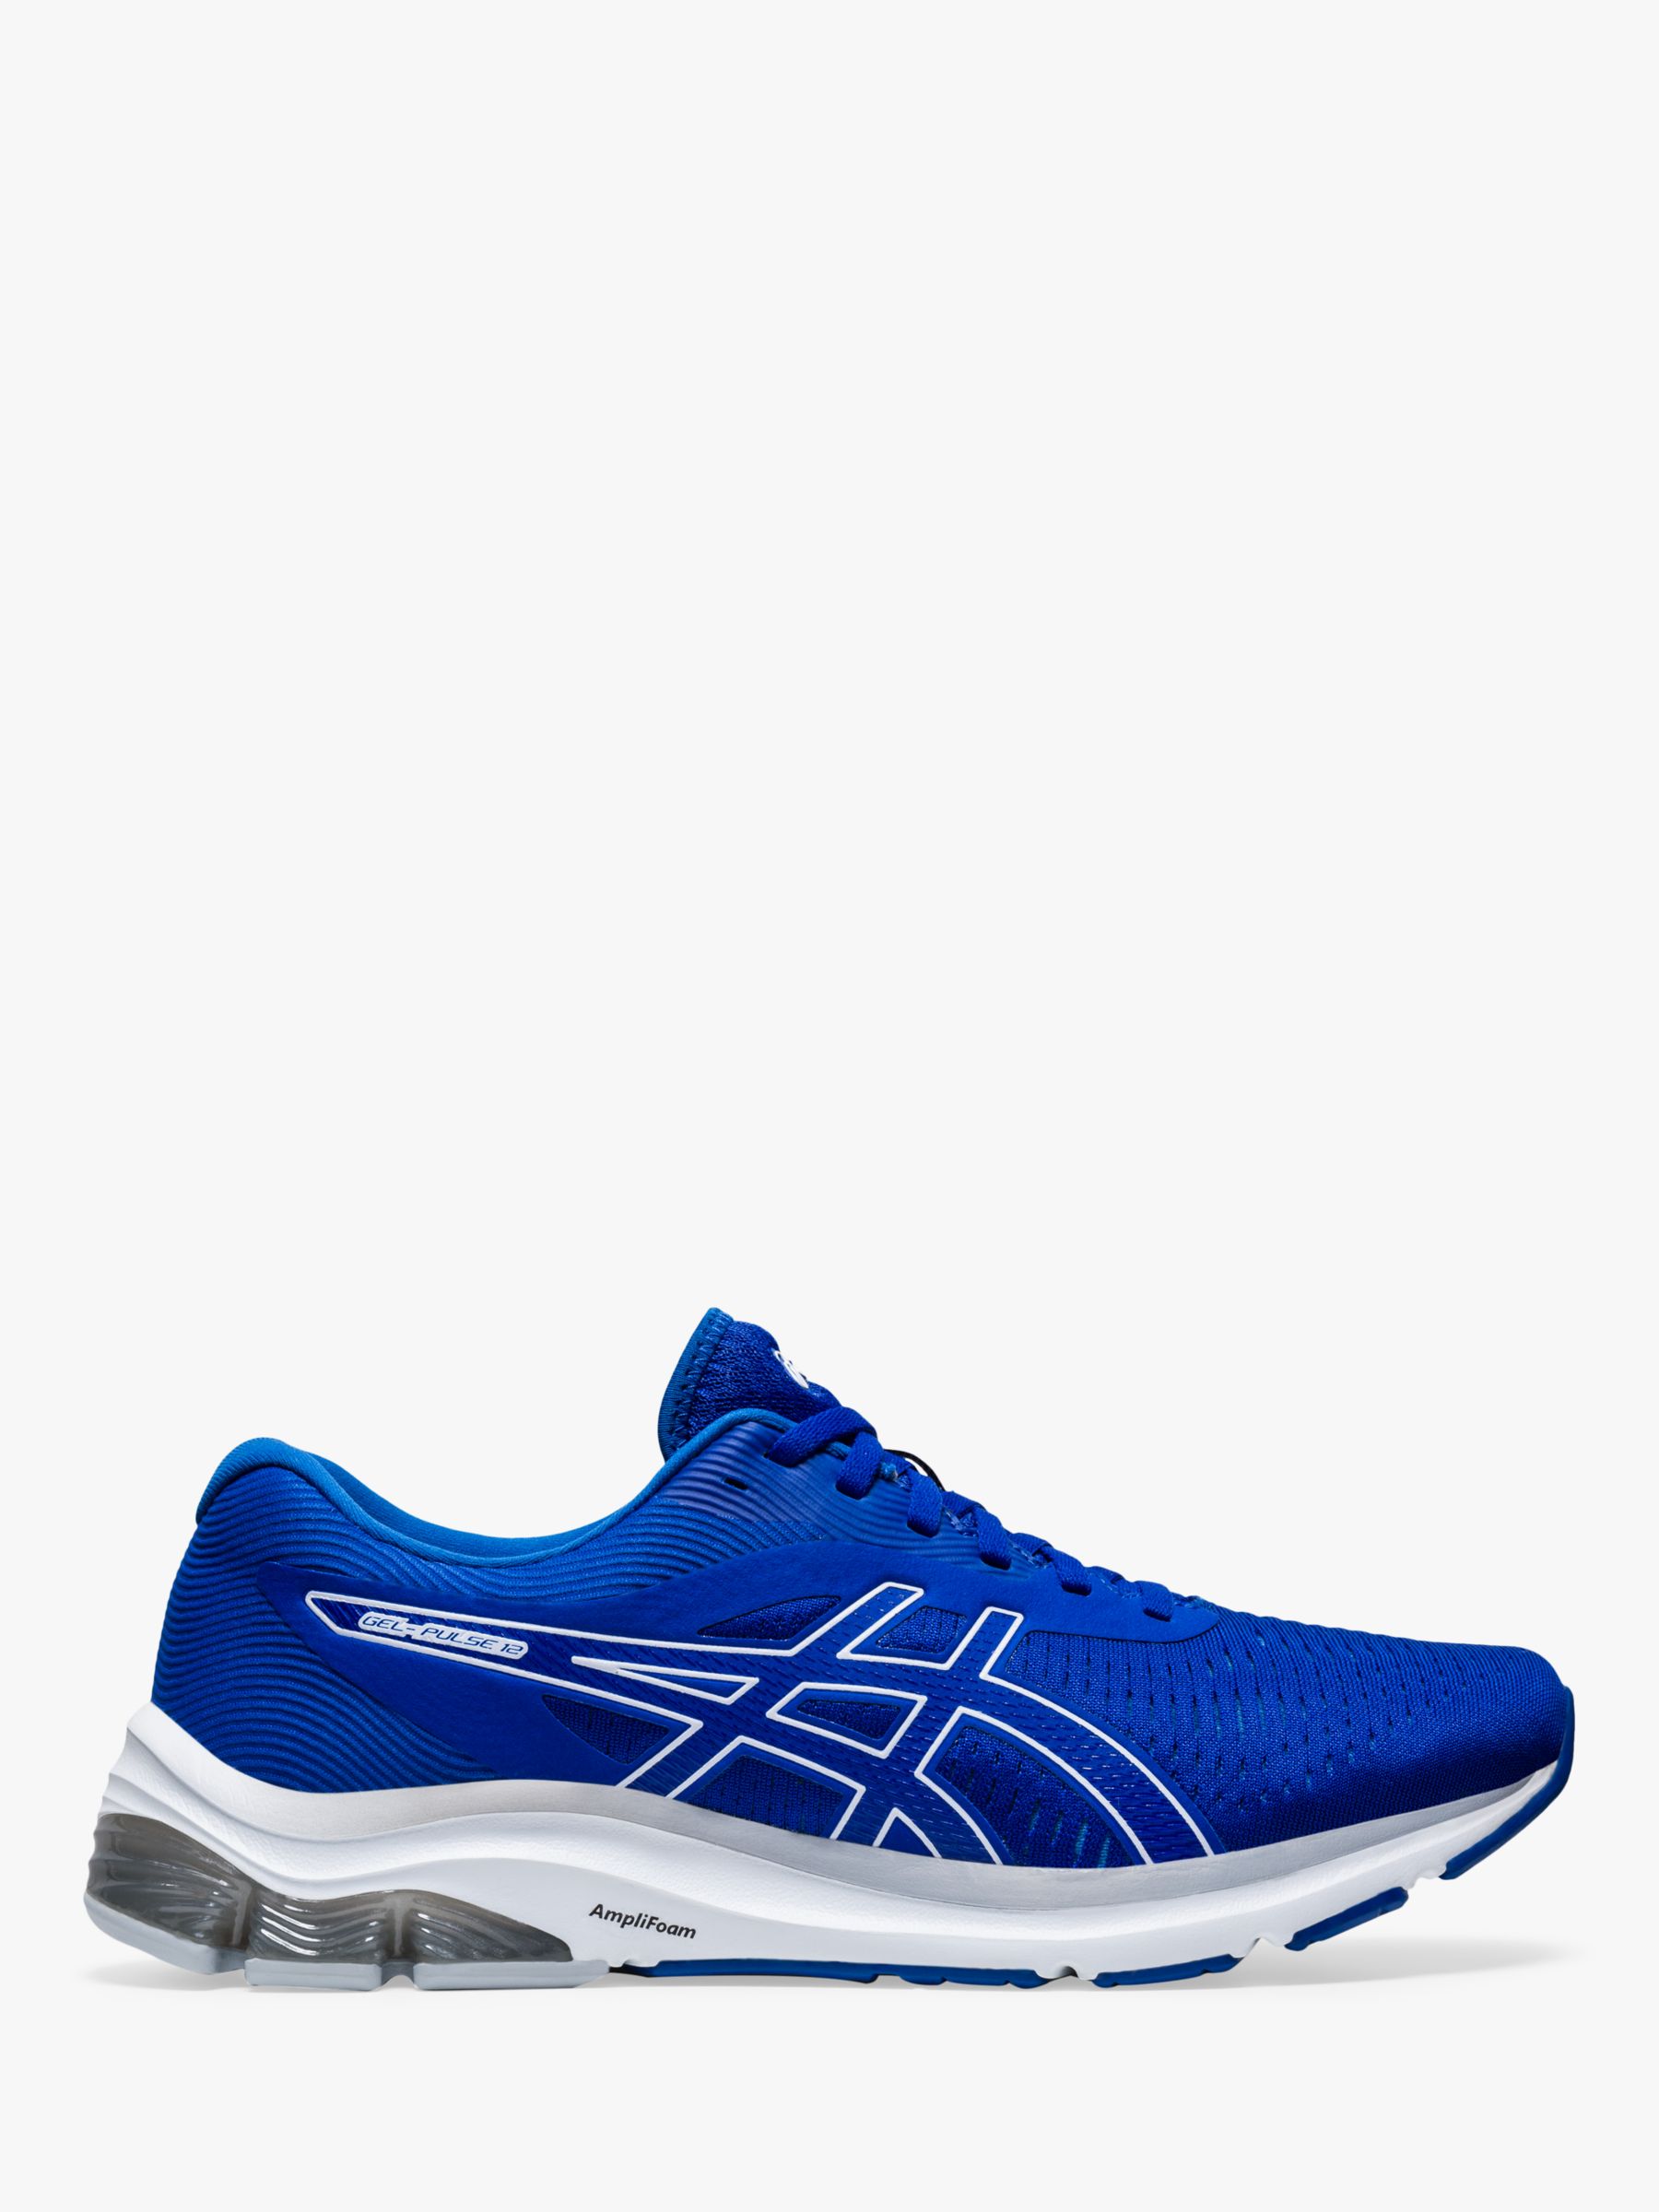 ASICS GEL-PULSE 12 Men's Running Shoes, ASICS Blue/ASICS Blue